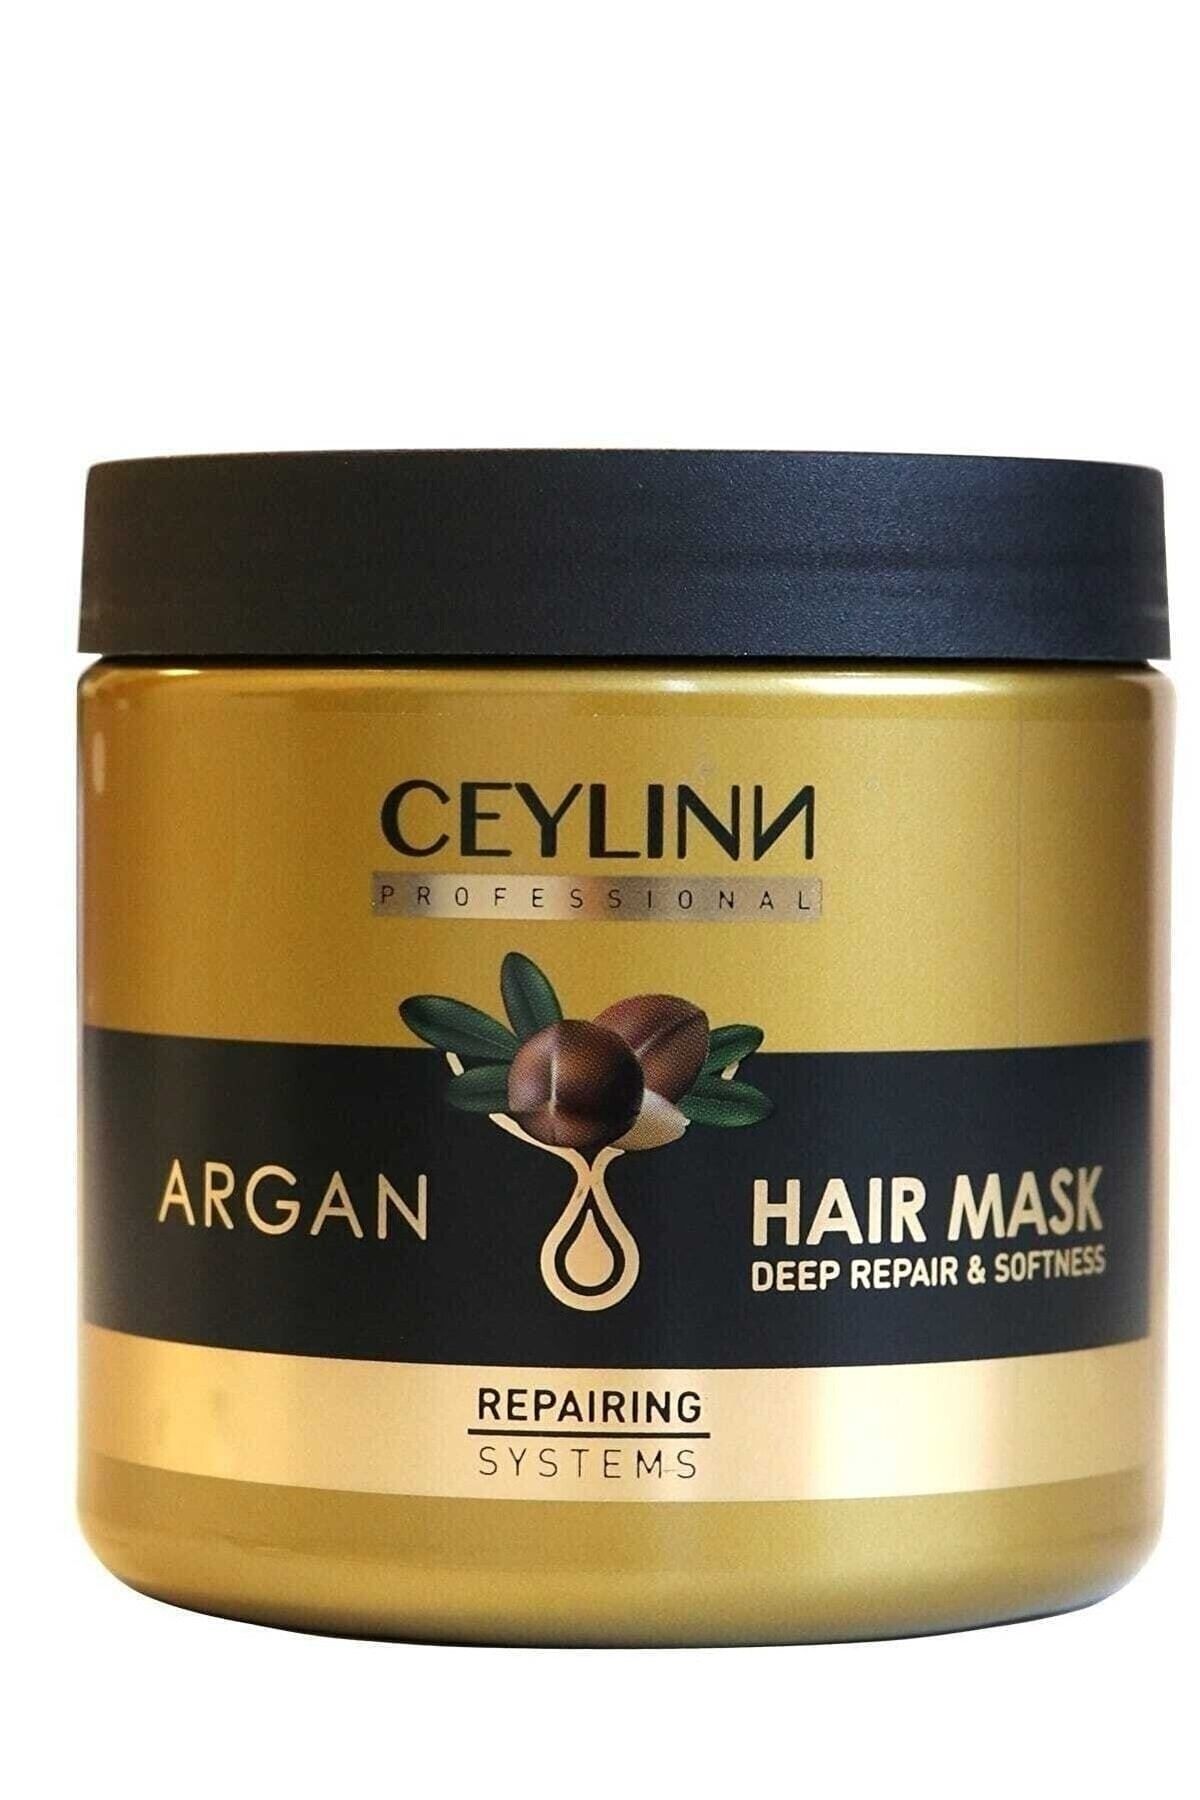 Ceylinn Argan Canlandırıcı Saç Bakım Maskesi Hair Mask 500 ml